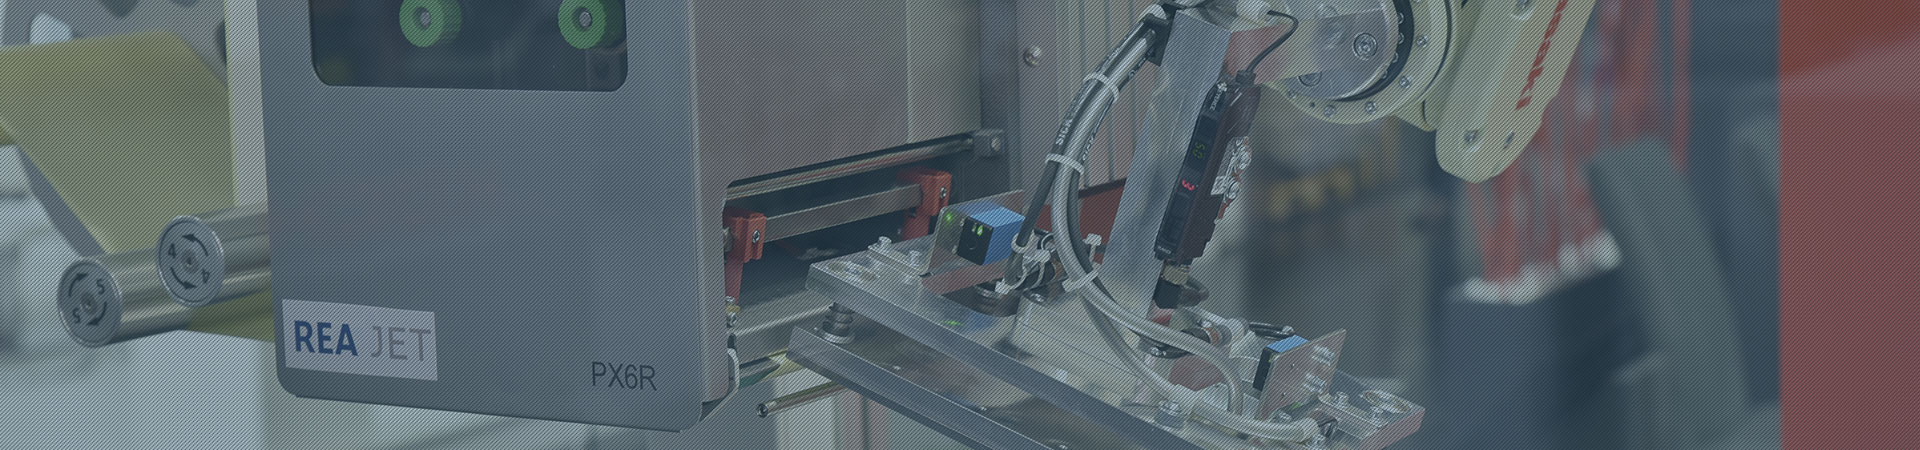 K-Label und REA LABEL Roboter Paletten Etikettiersystem - Header - REA LABEL Sondermaschinenbau